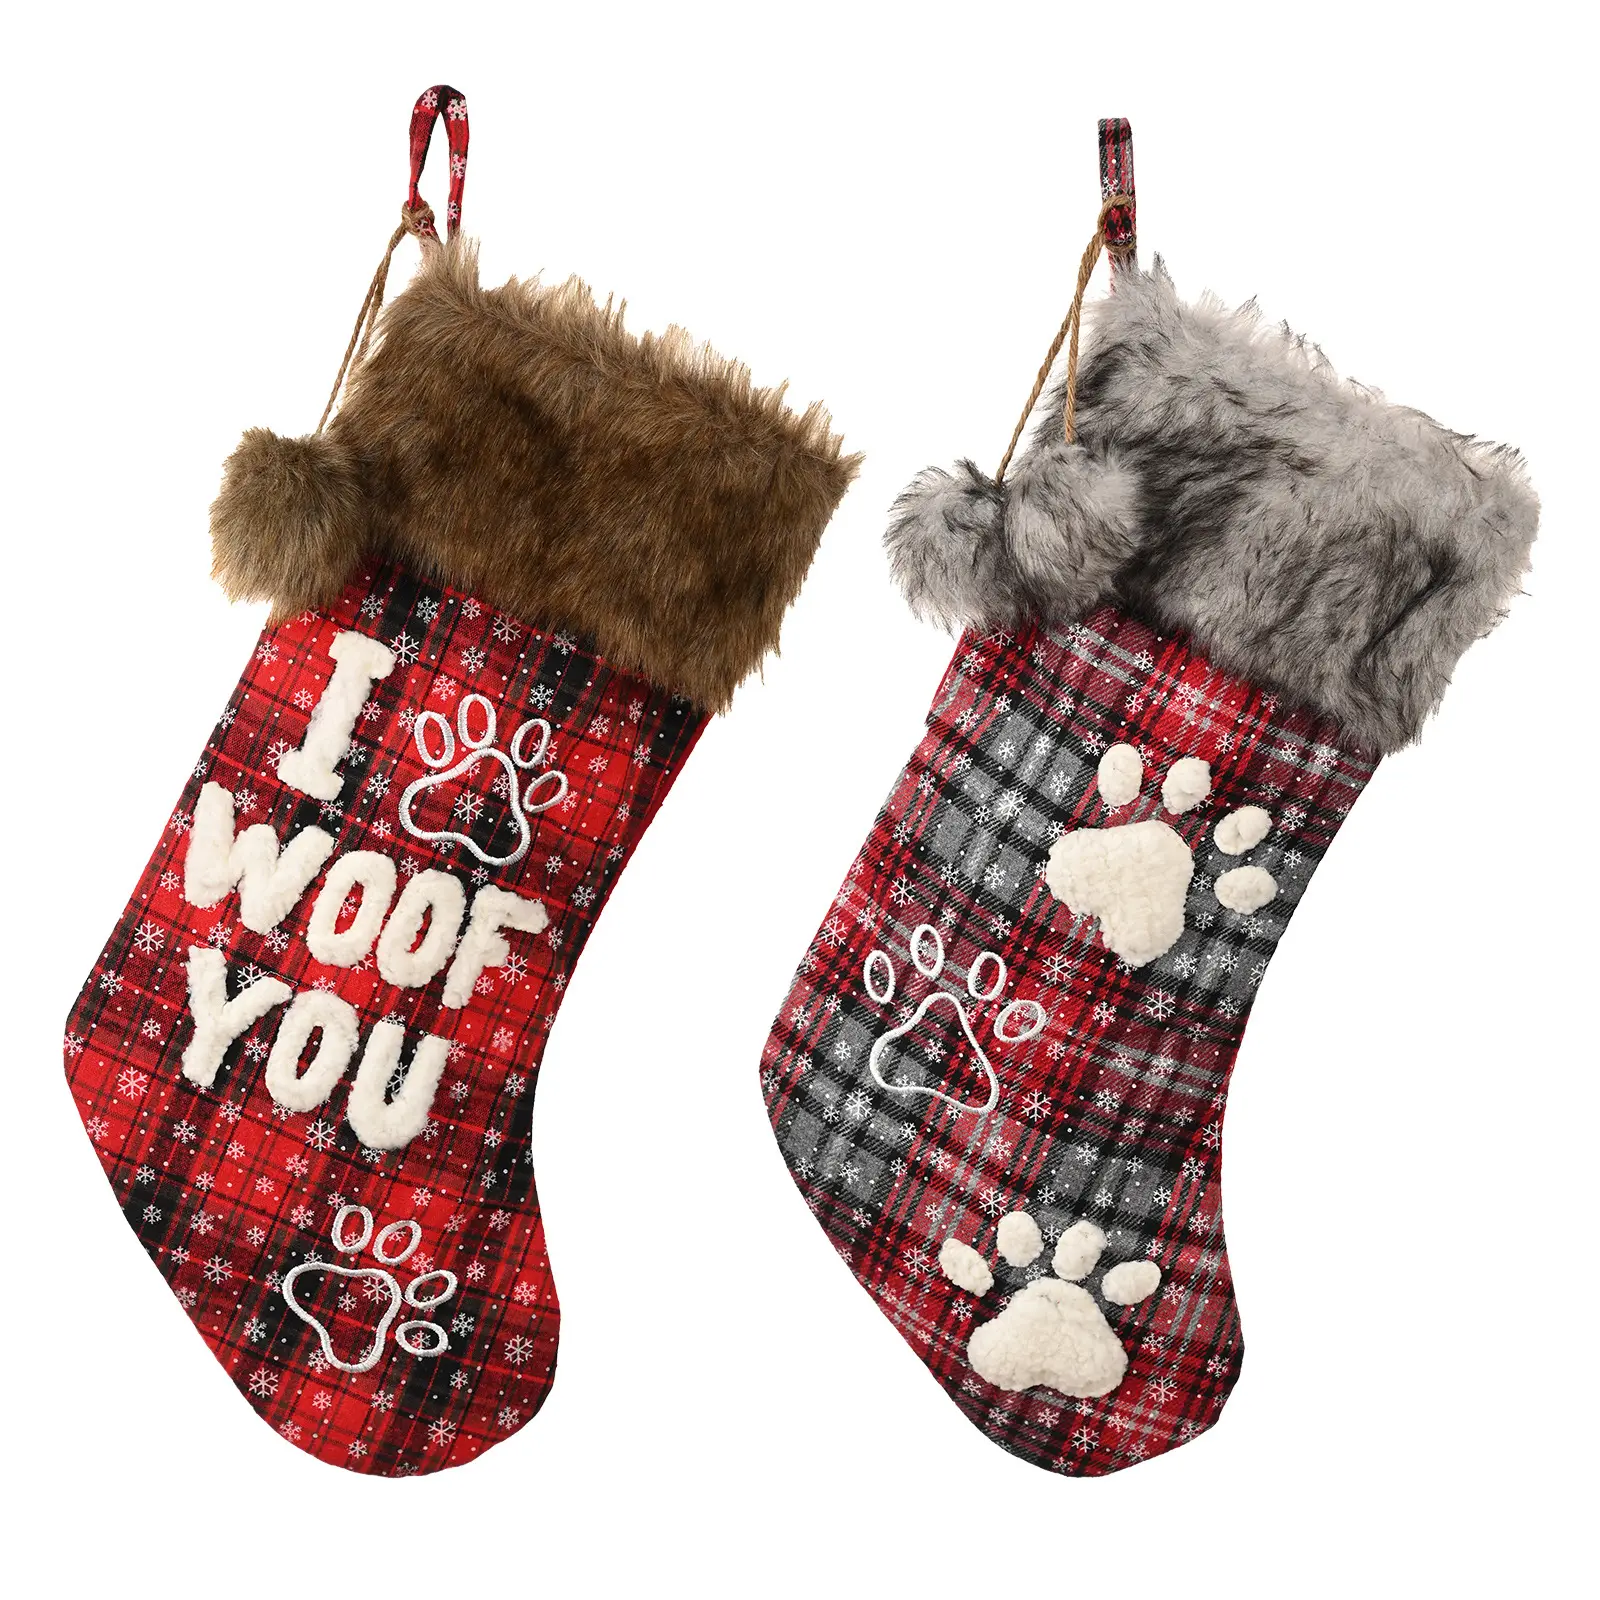 Suministros de decoración navideña para mascotas Adornos Medias Navidad para mascotas Bolsas de regalo de Navidad Medias navideñas para perros para bordado